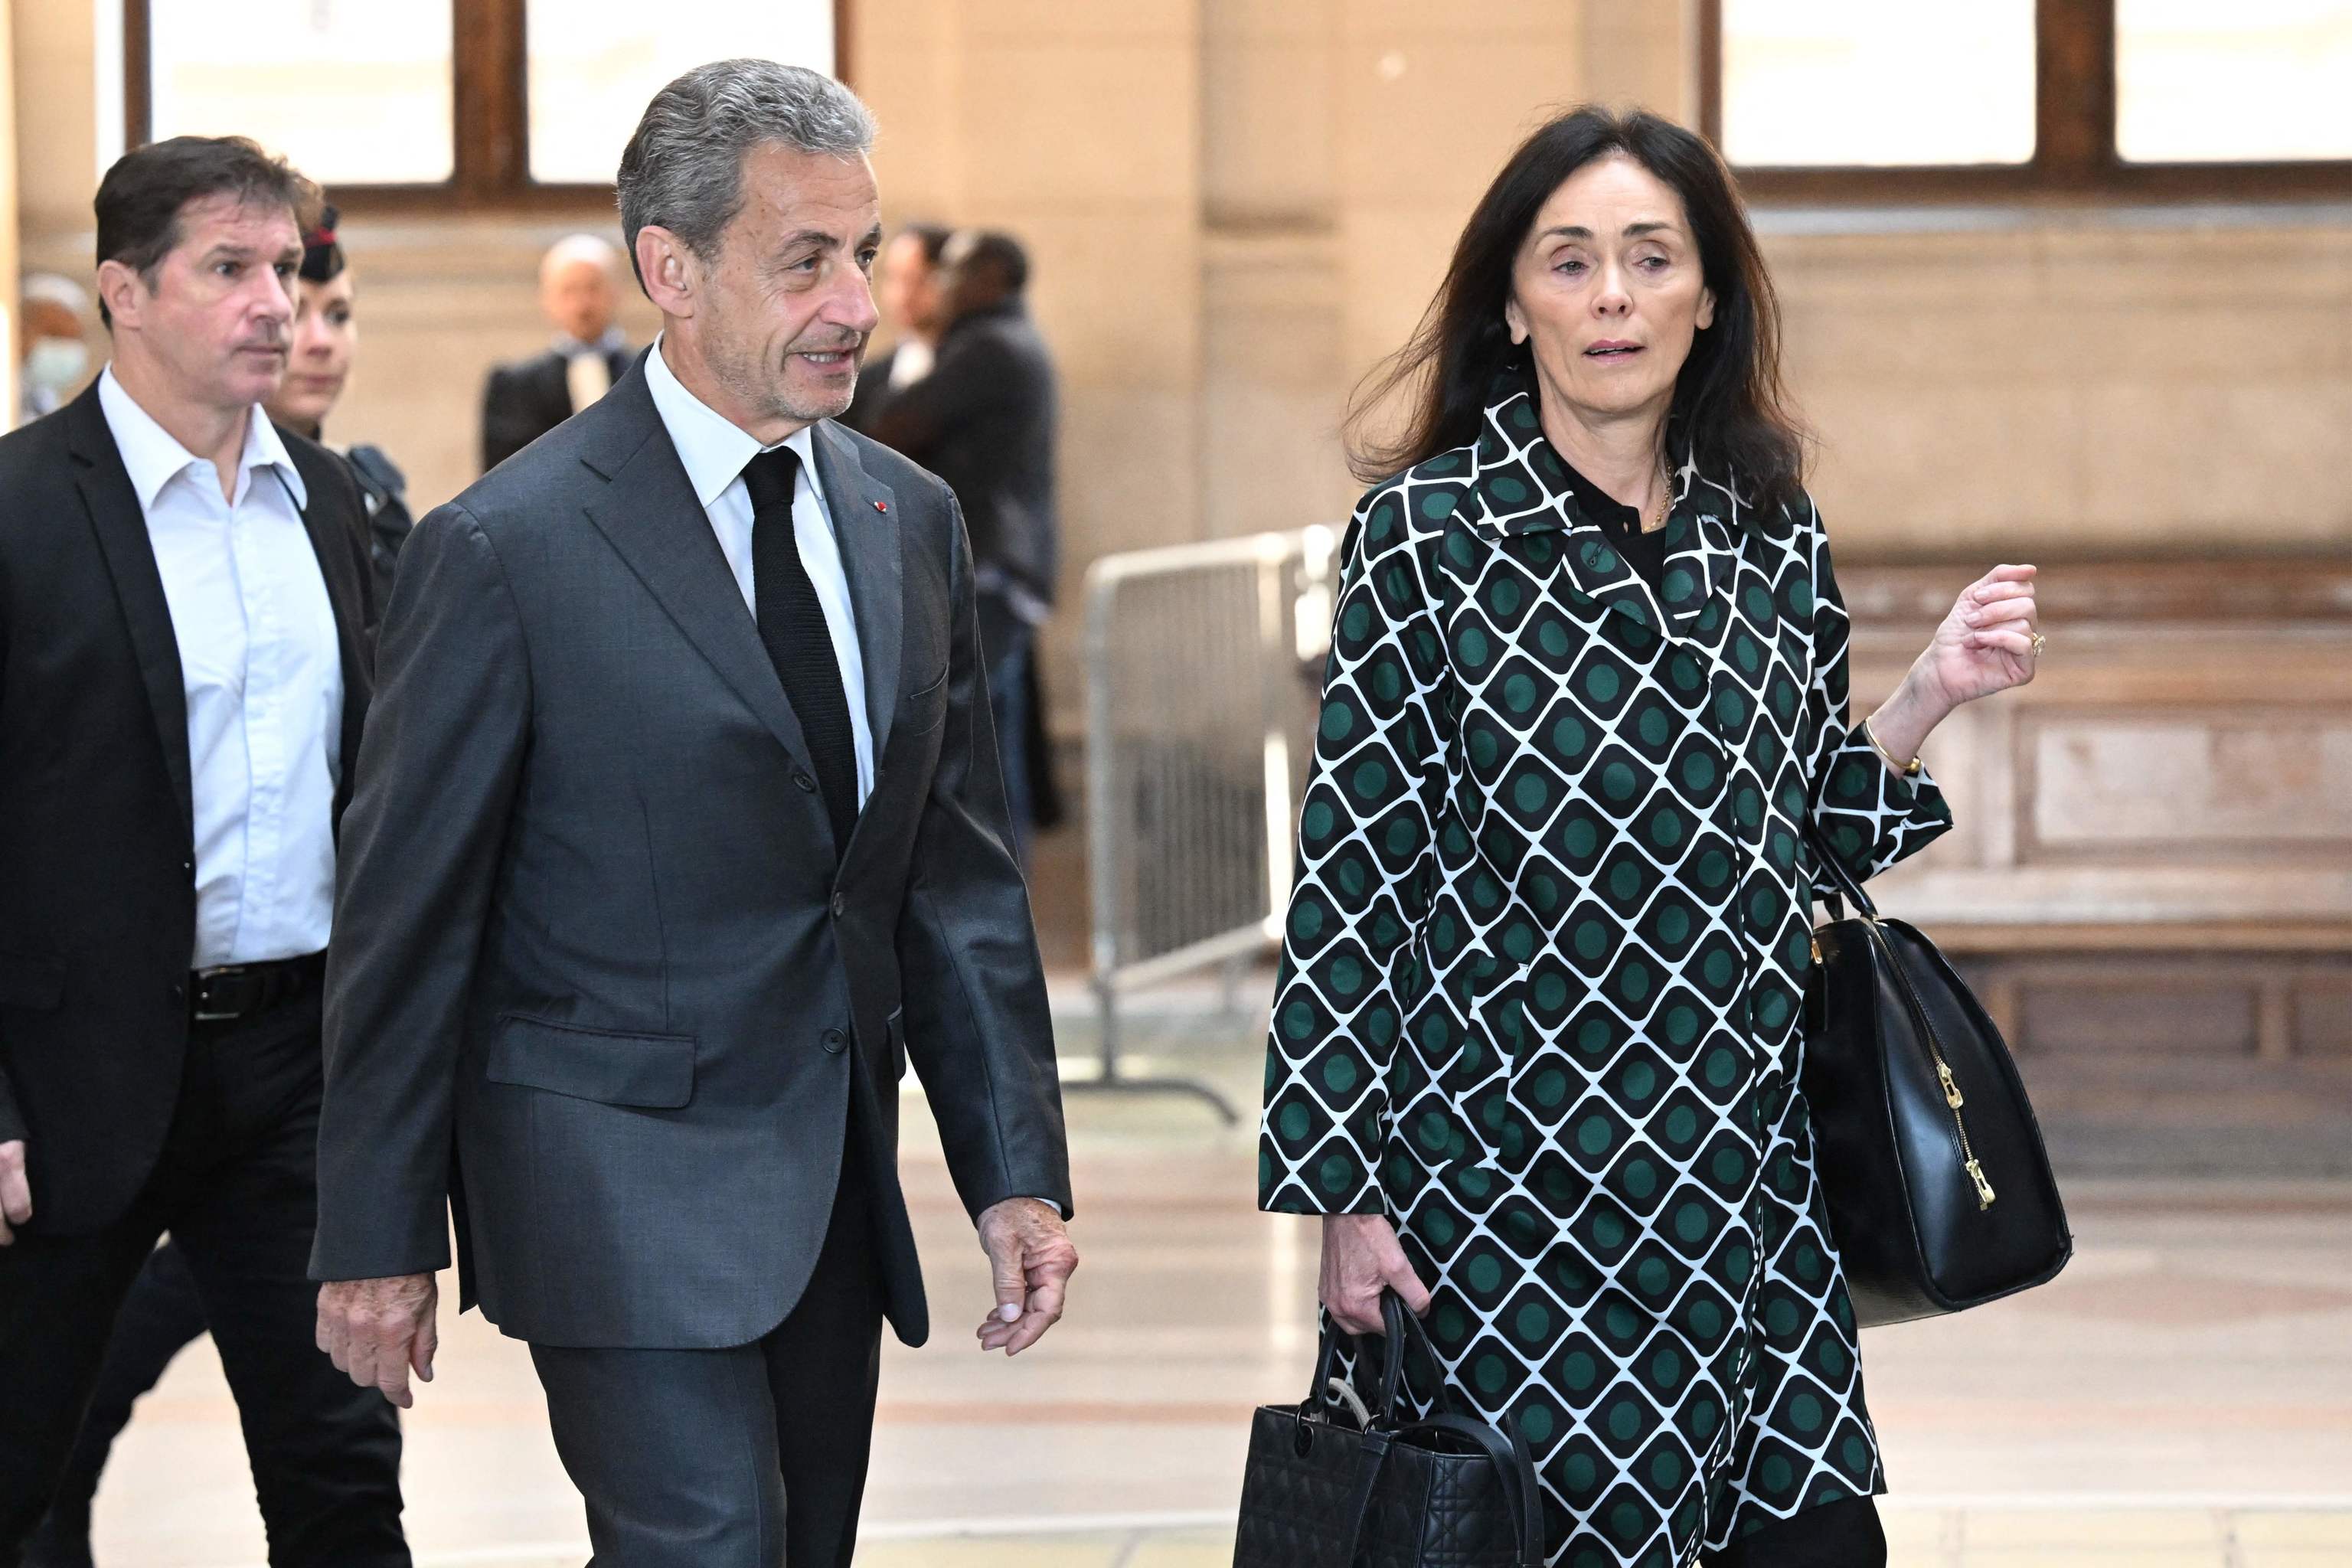 Confirmada la sentencia de cárcel para Sarkozy en un caso de corrupción